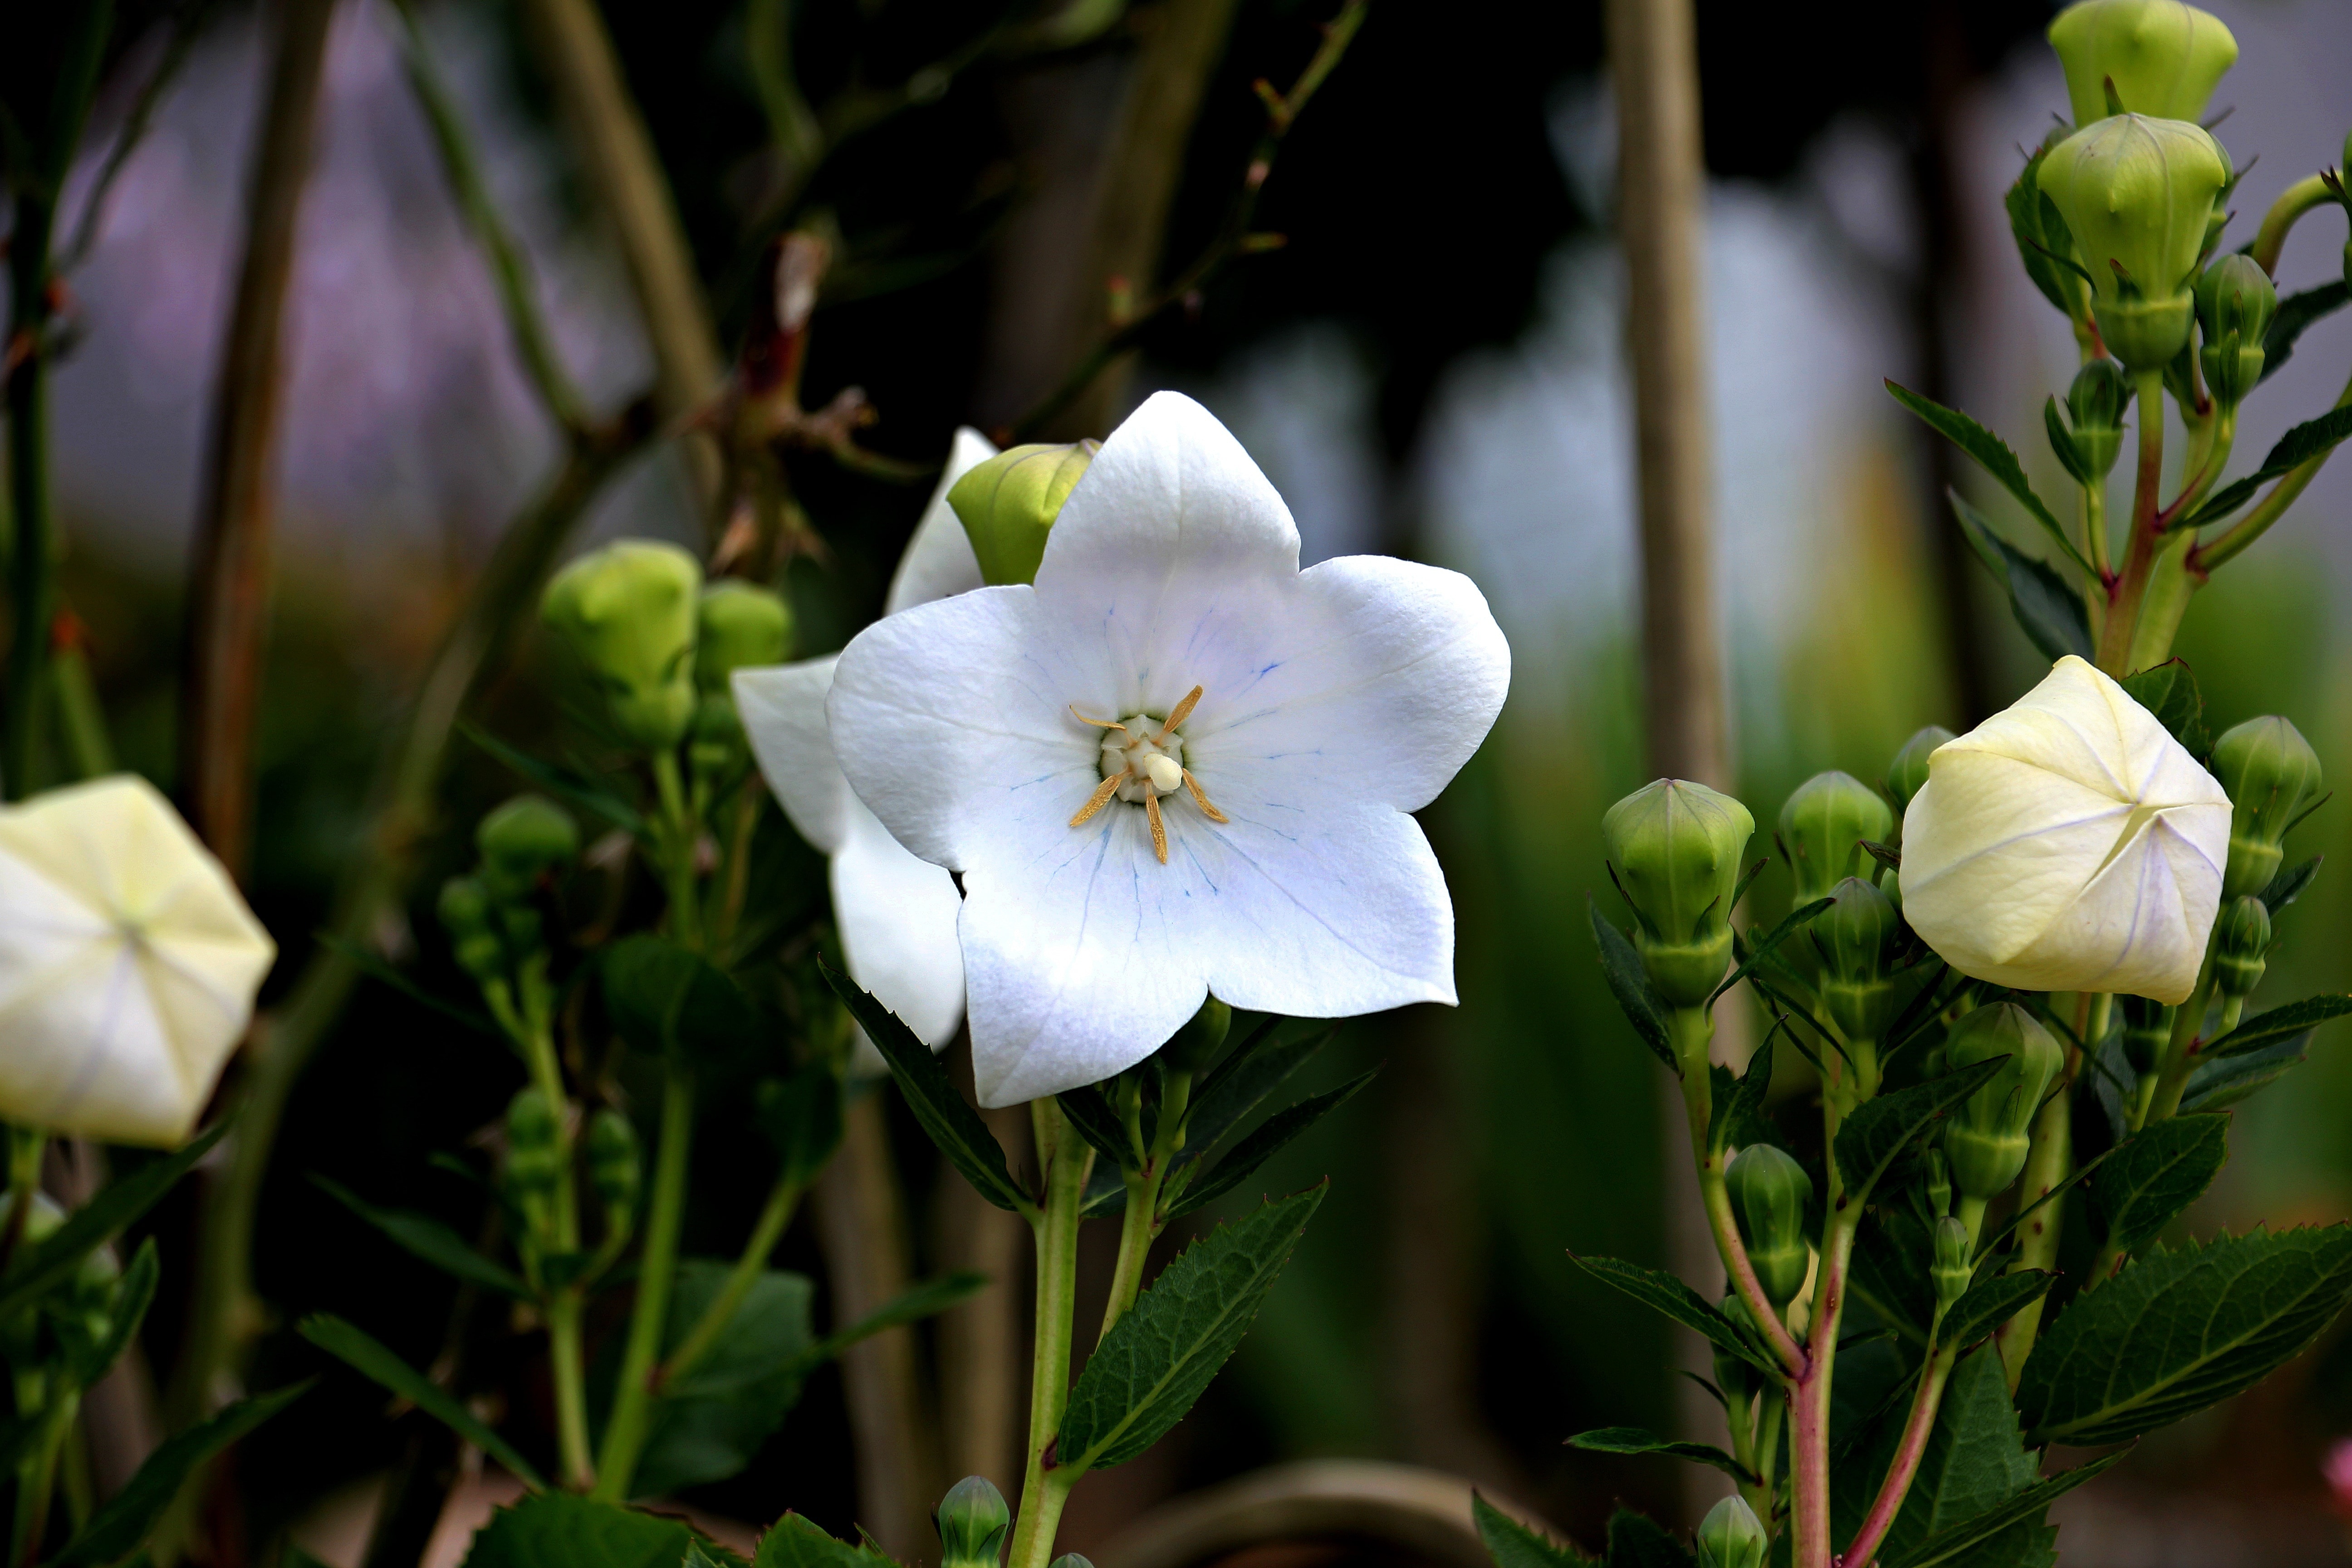 white 5 petaled flower